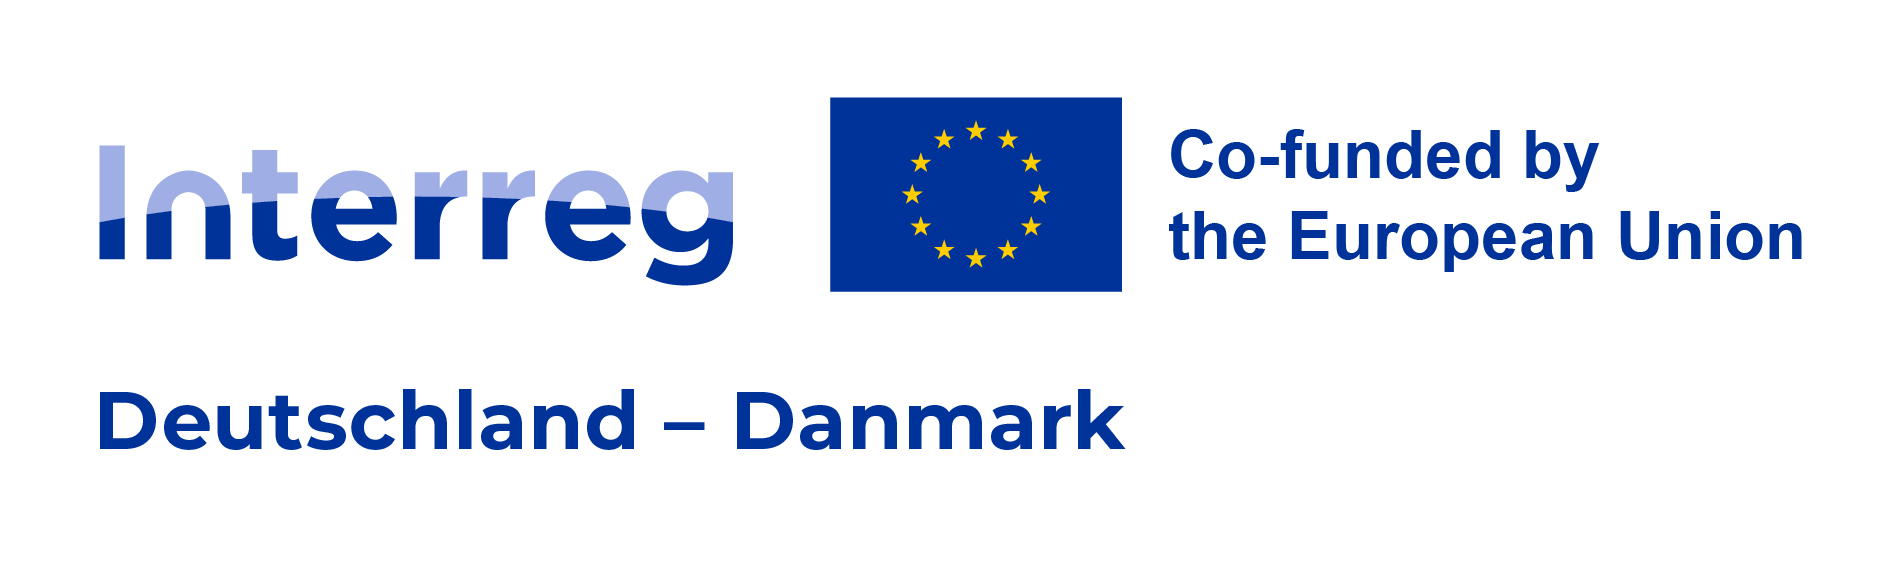 Interreg Deutschland-Danmark